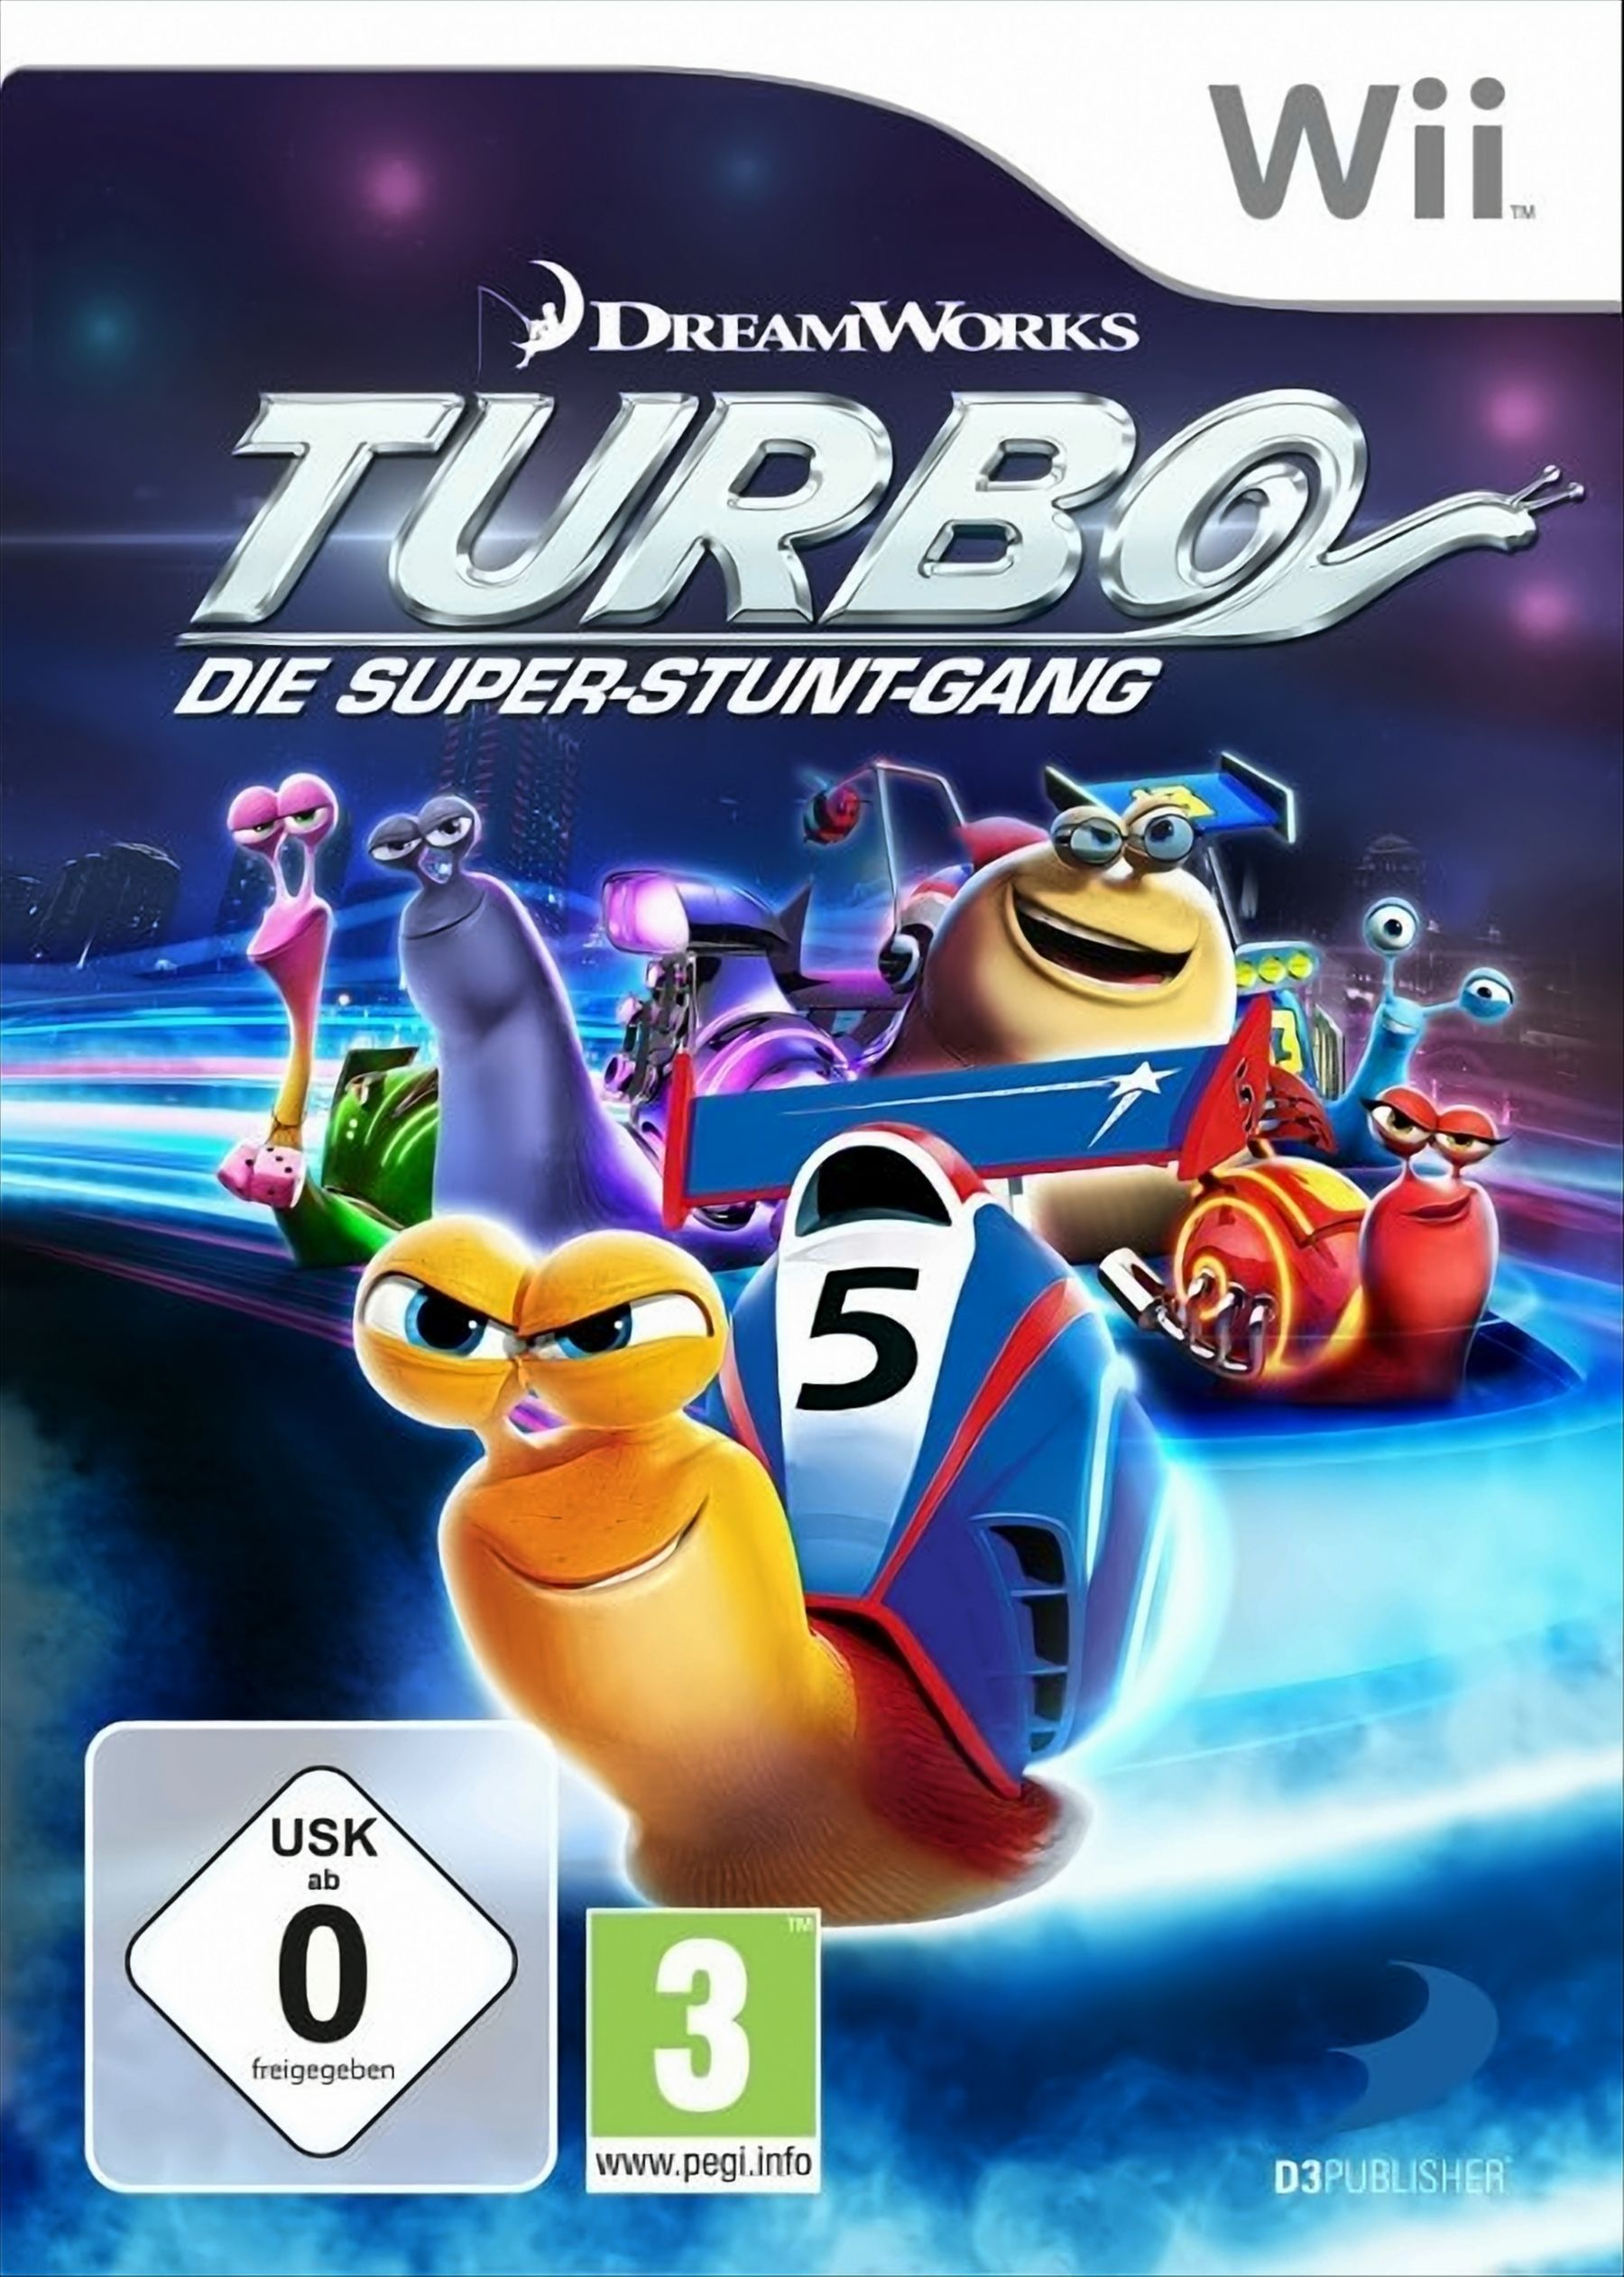 Wii] - Turbo [Nintendo Super-Stunt-Gang - Die